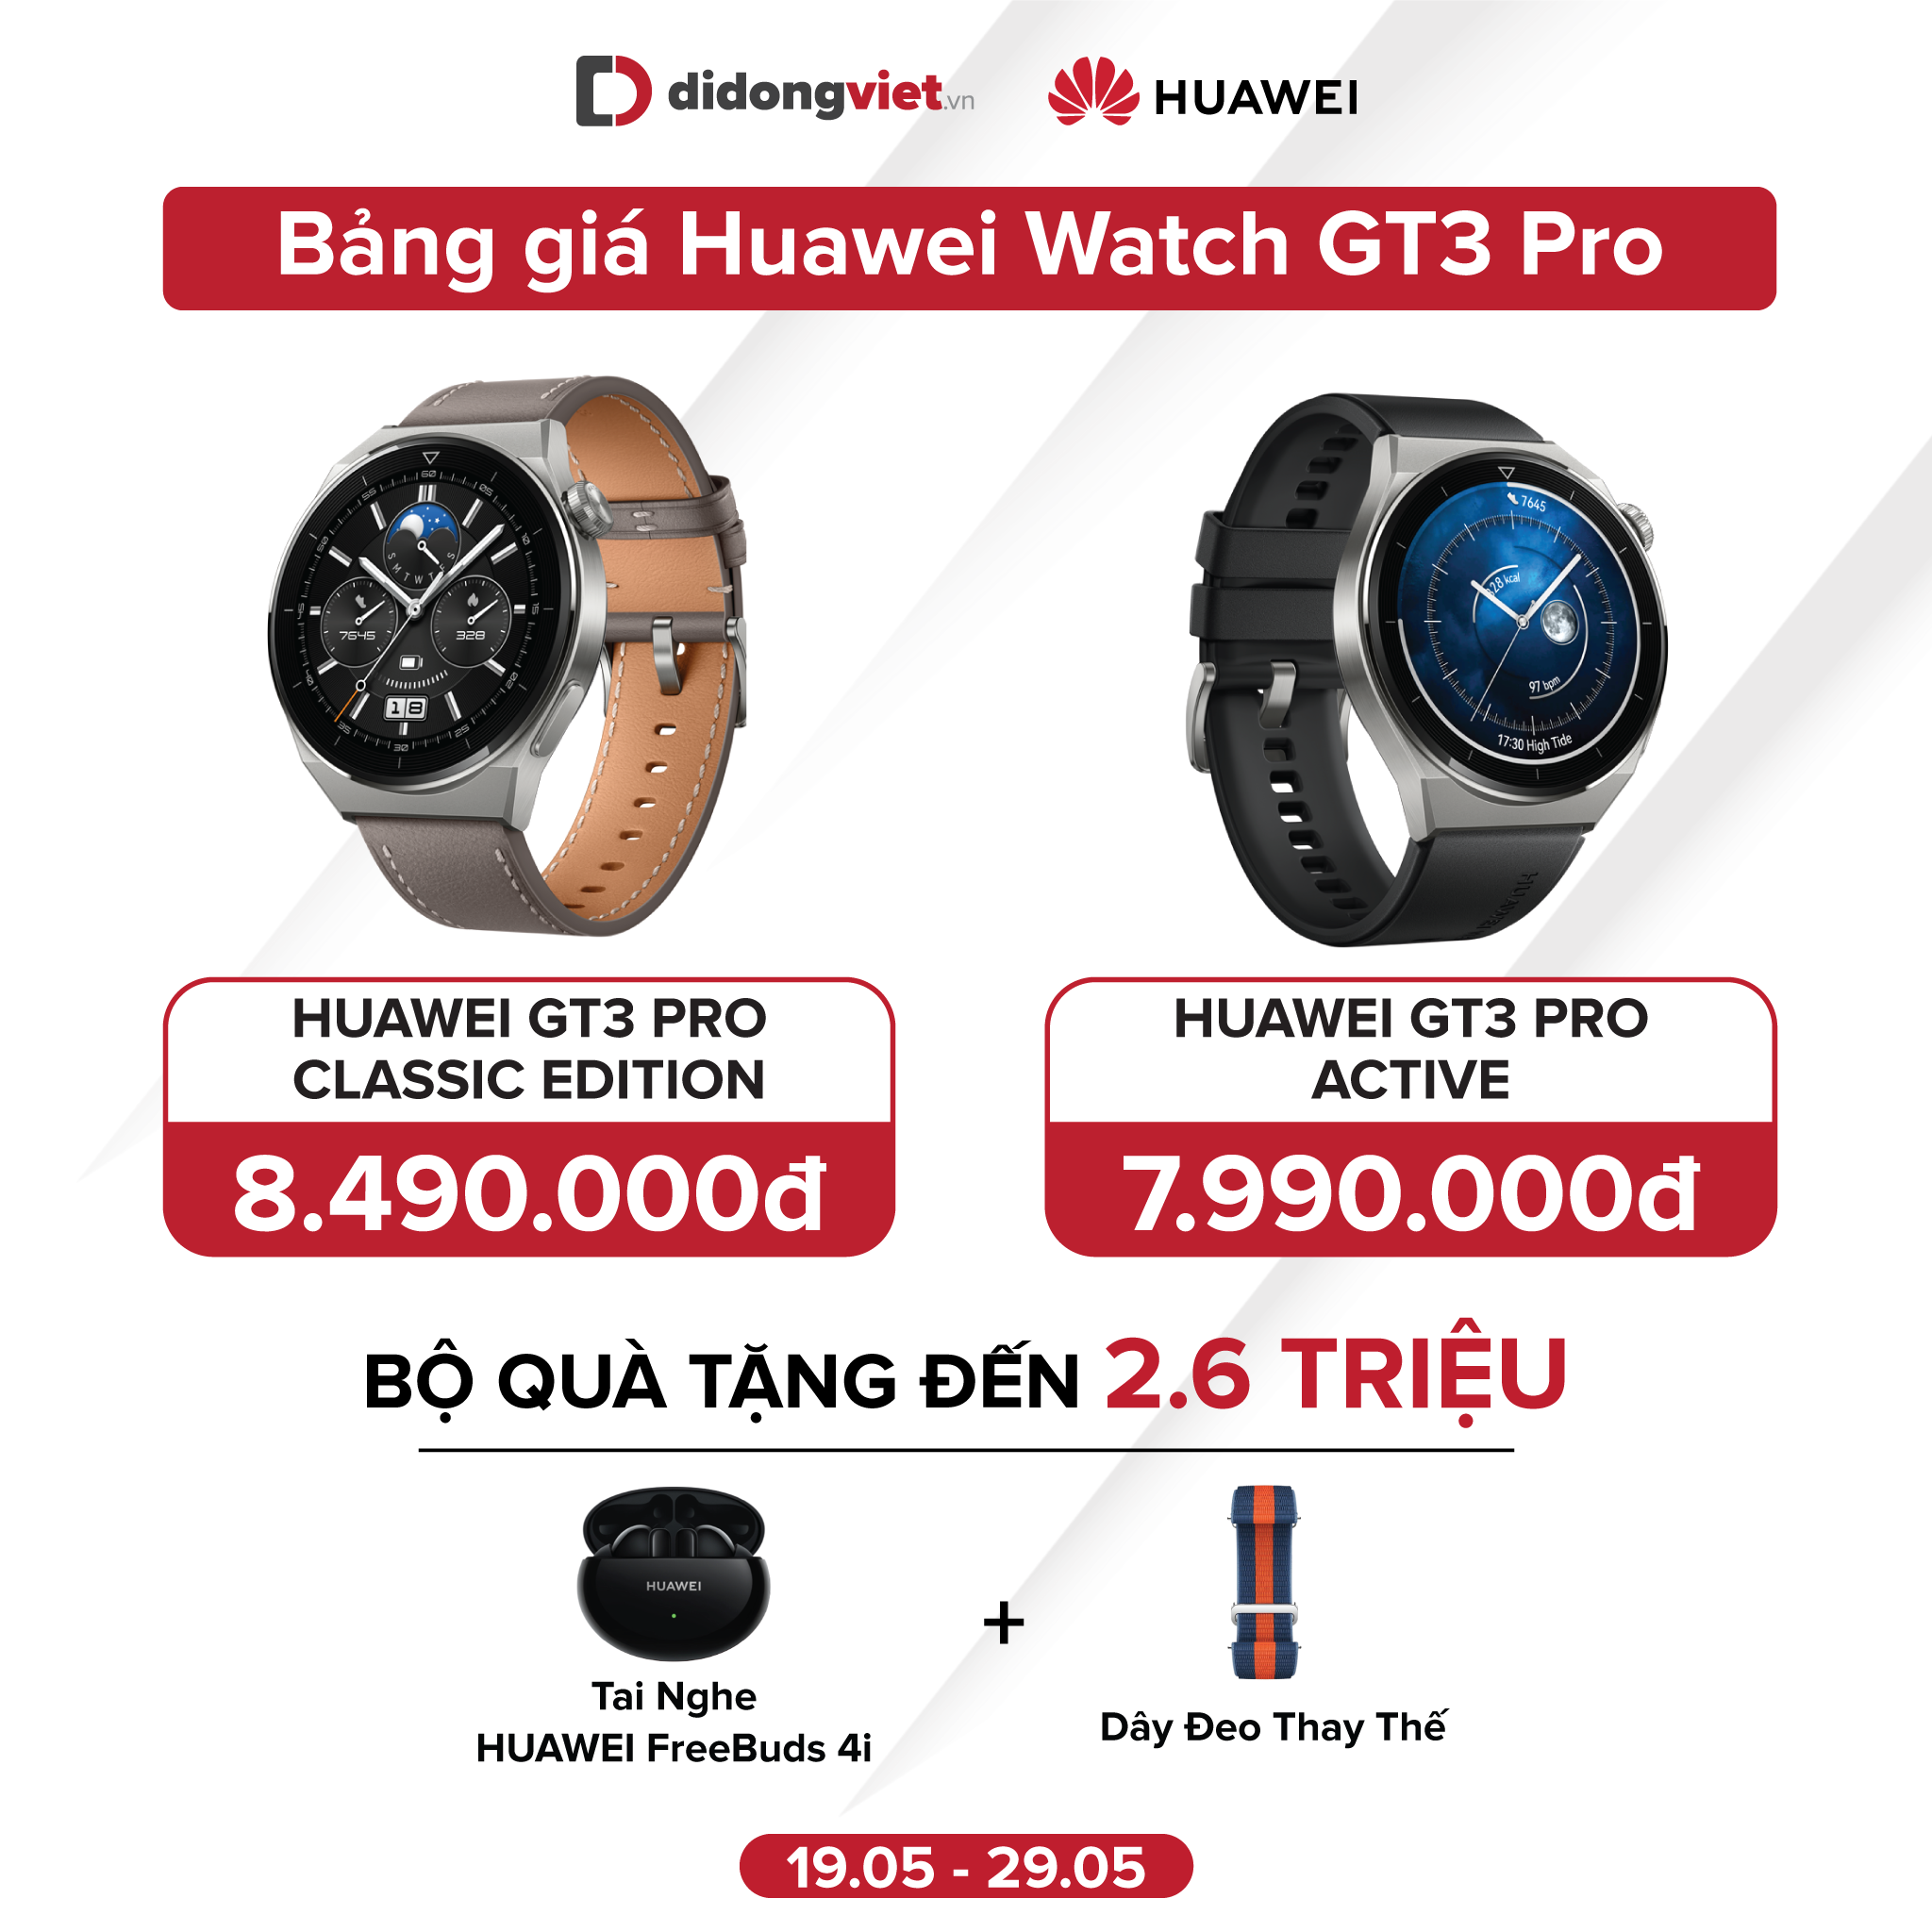 Huawei Watch GT3 Pro mở bán tại Việt Nam, chú trọng hơn tính năng theo dõi sức khỏe, giá từ 7.99 triệu đồng